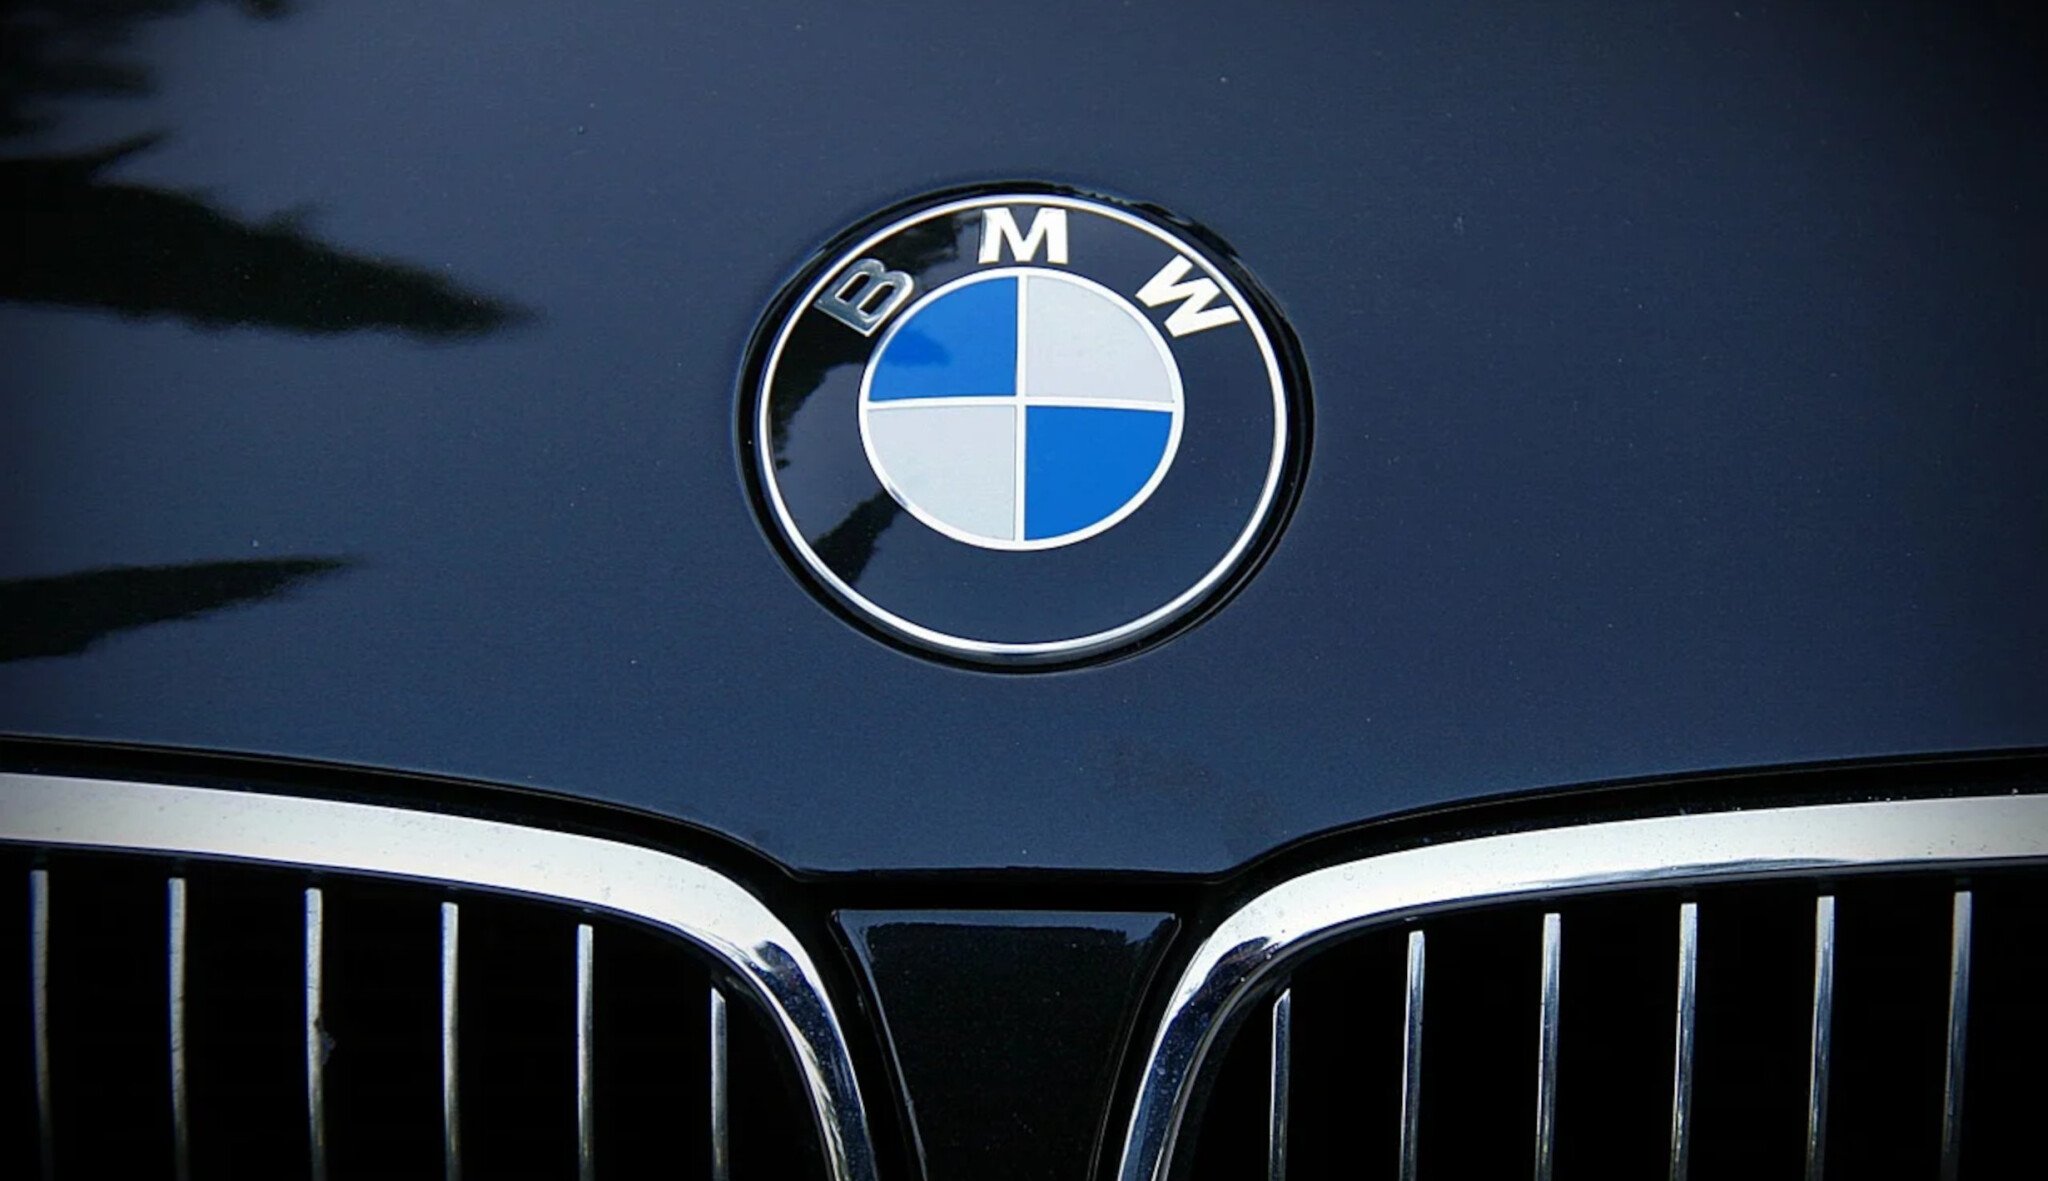 Odbyt automobilky BMW loni stoupl o 6,5 procenta. Dodala rekordní počet vozů